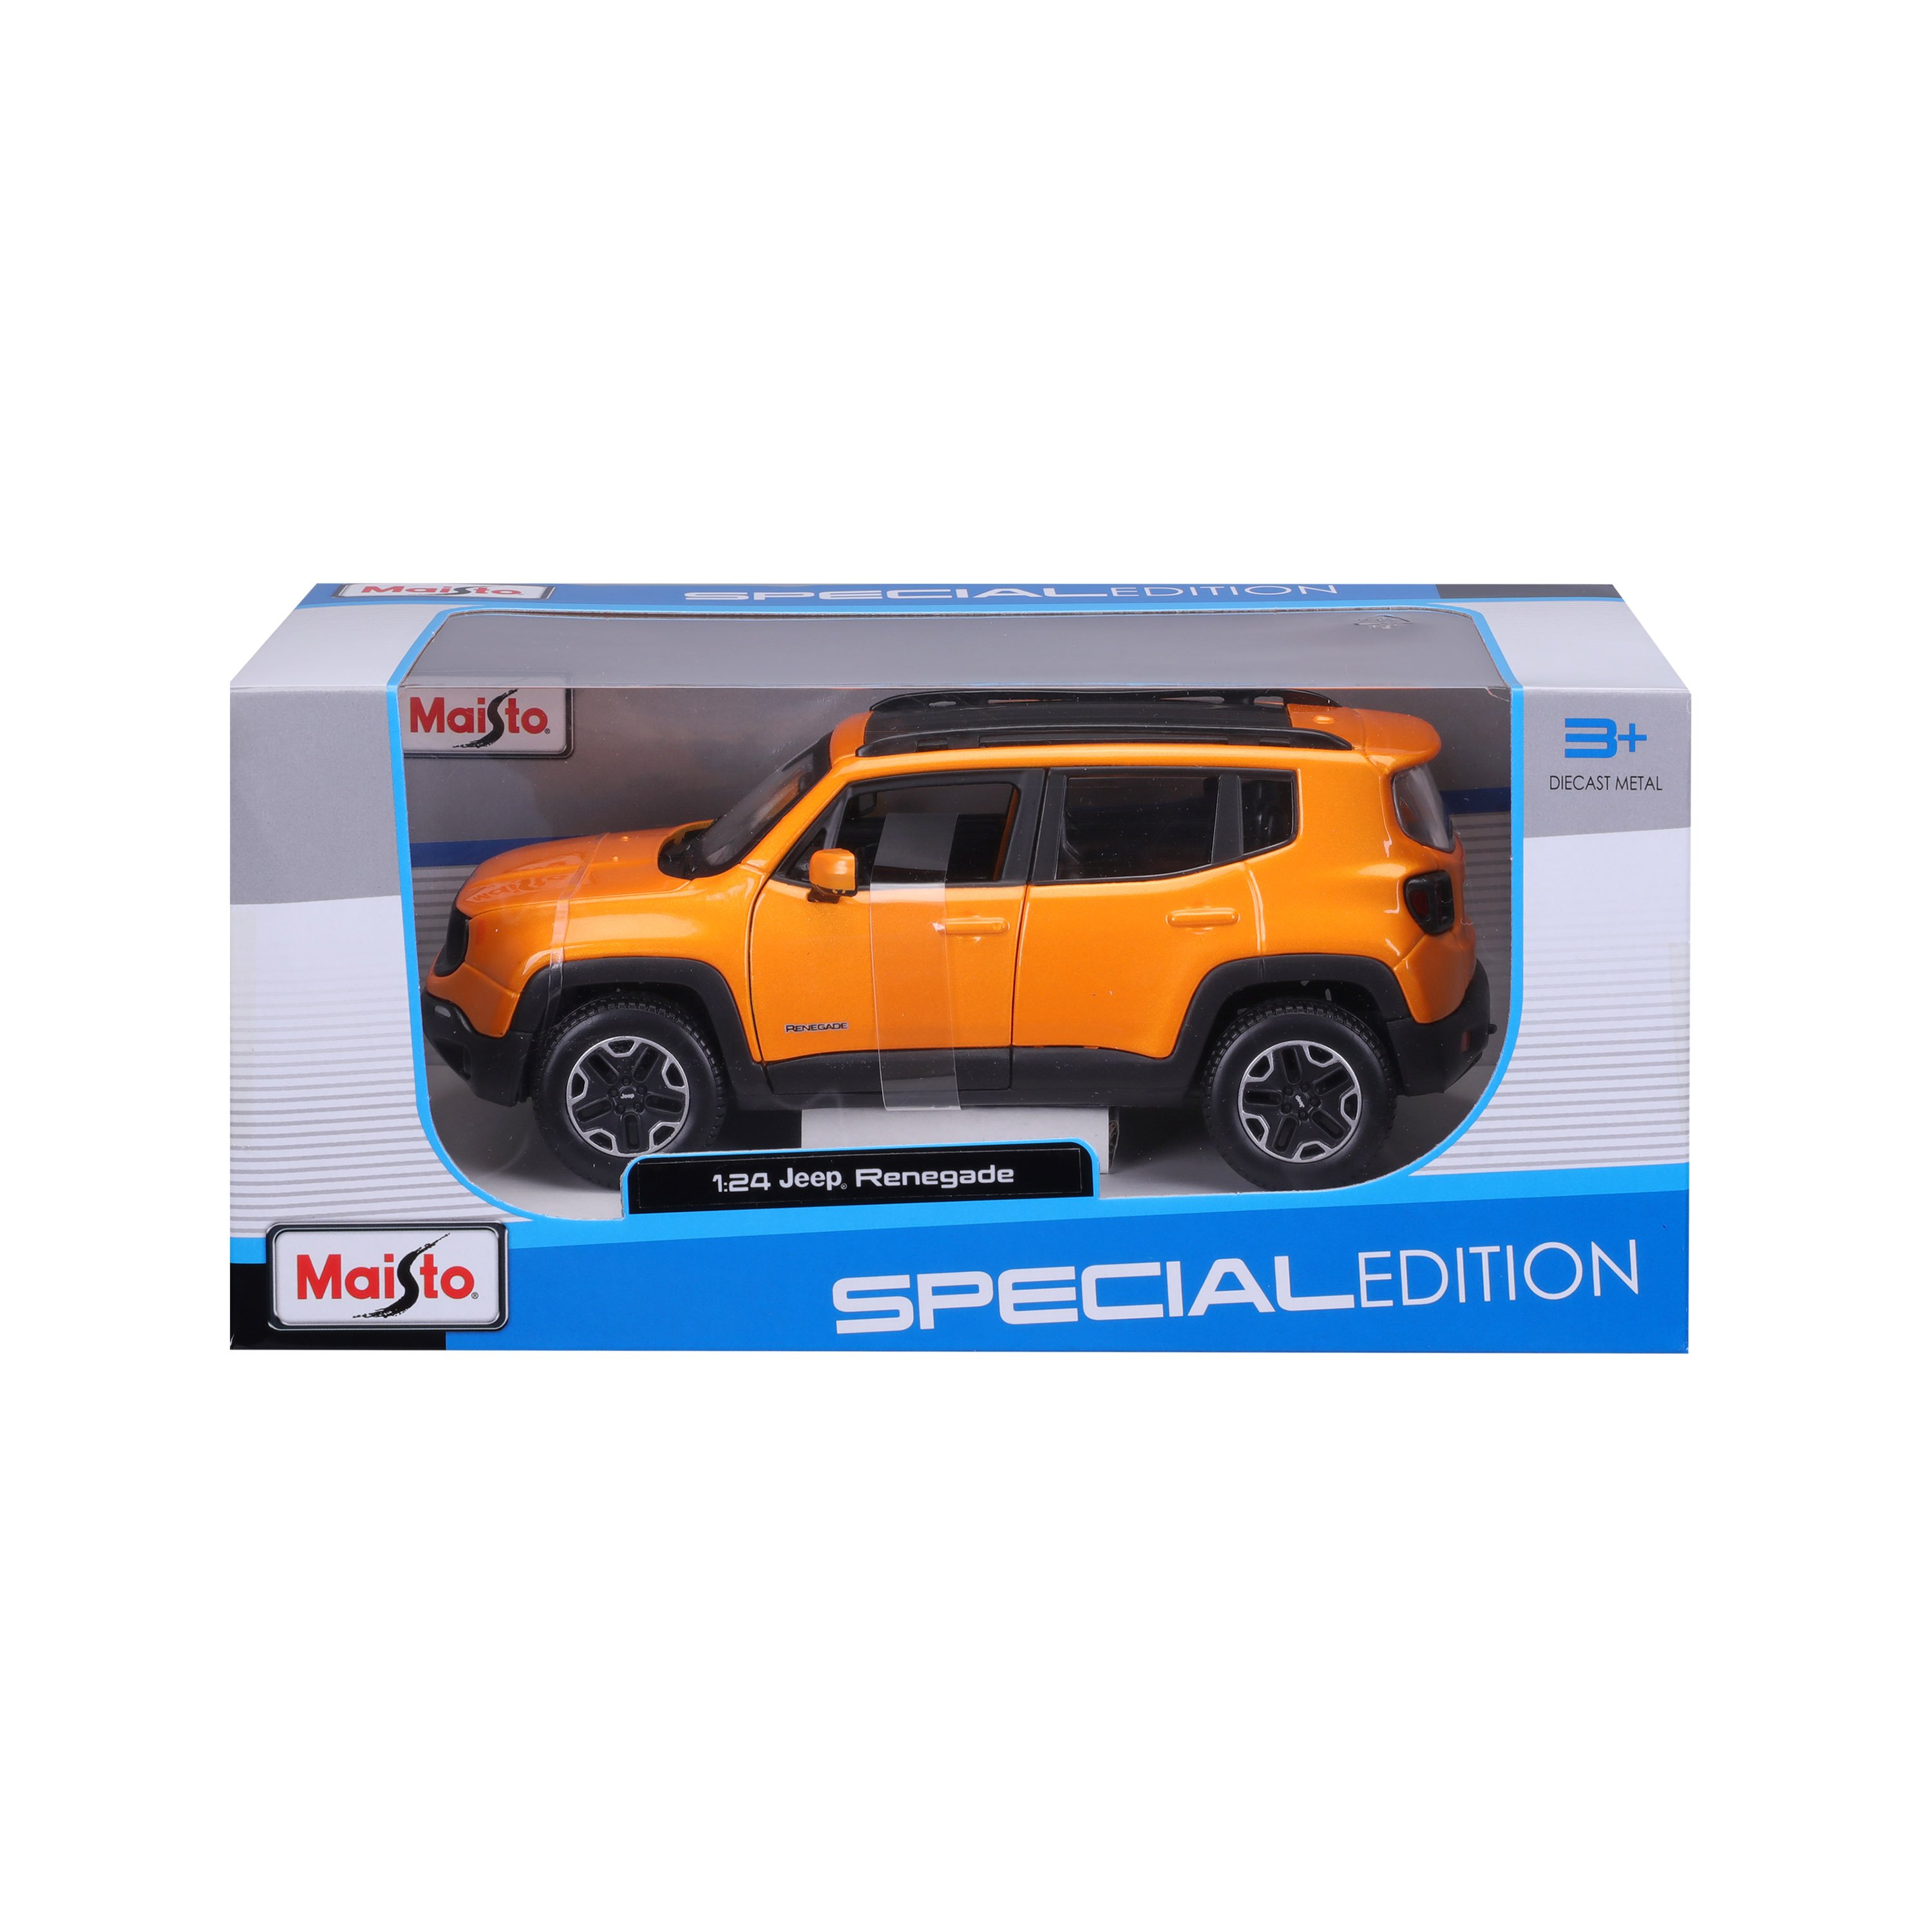 Ігрова автомодель Maisto Jeep Renegade, помаранчевий металік, 1:24 (31282 orange) - фото 2